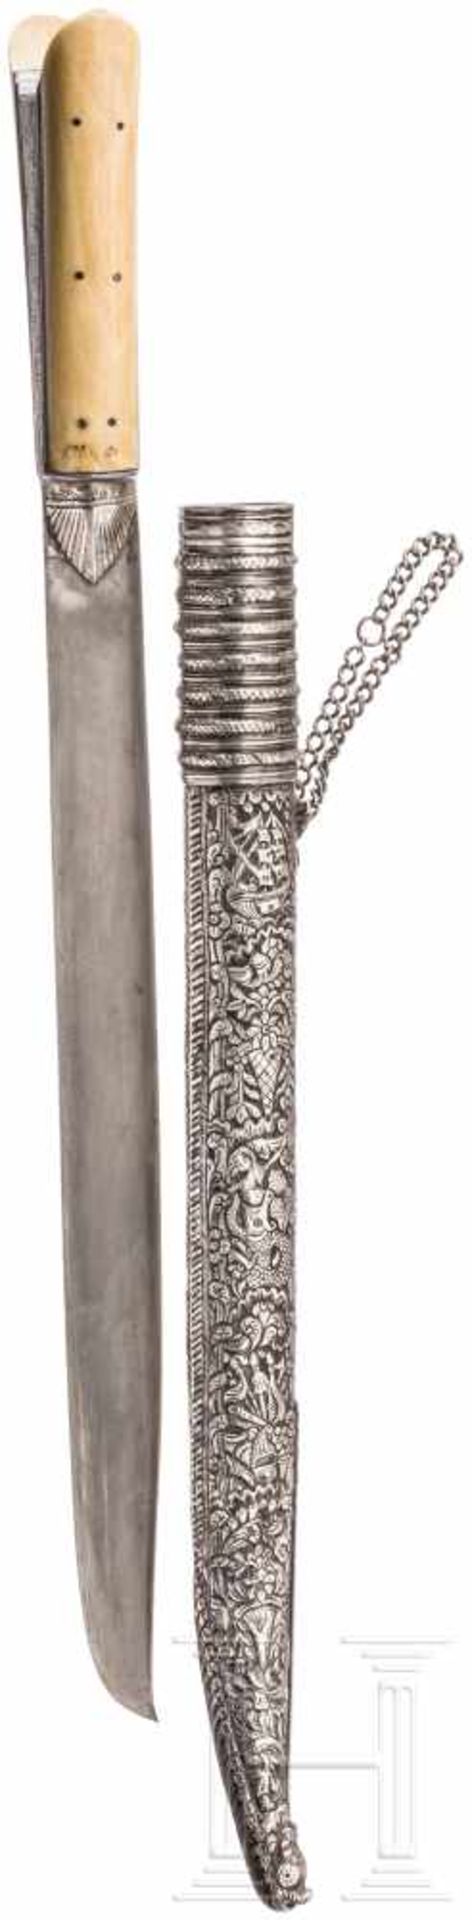 Silbermontiertes Kreta-Messer mit Elfenbeingriff, um 1800Leicht gekrümmte, am Rücken T-förmig - Bild 2 aus 2